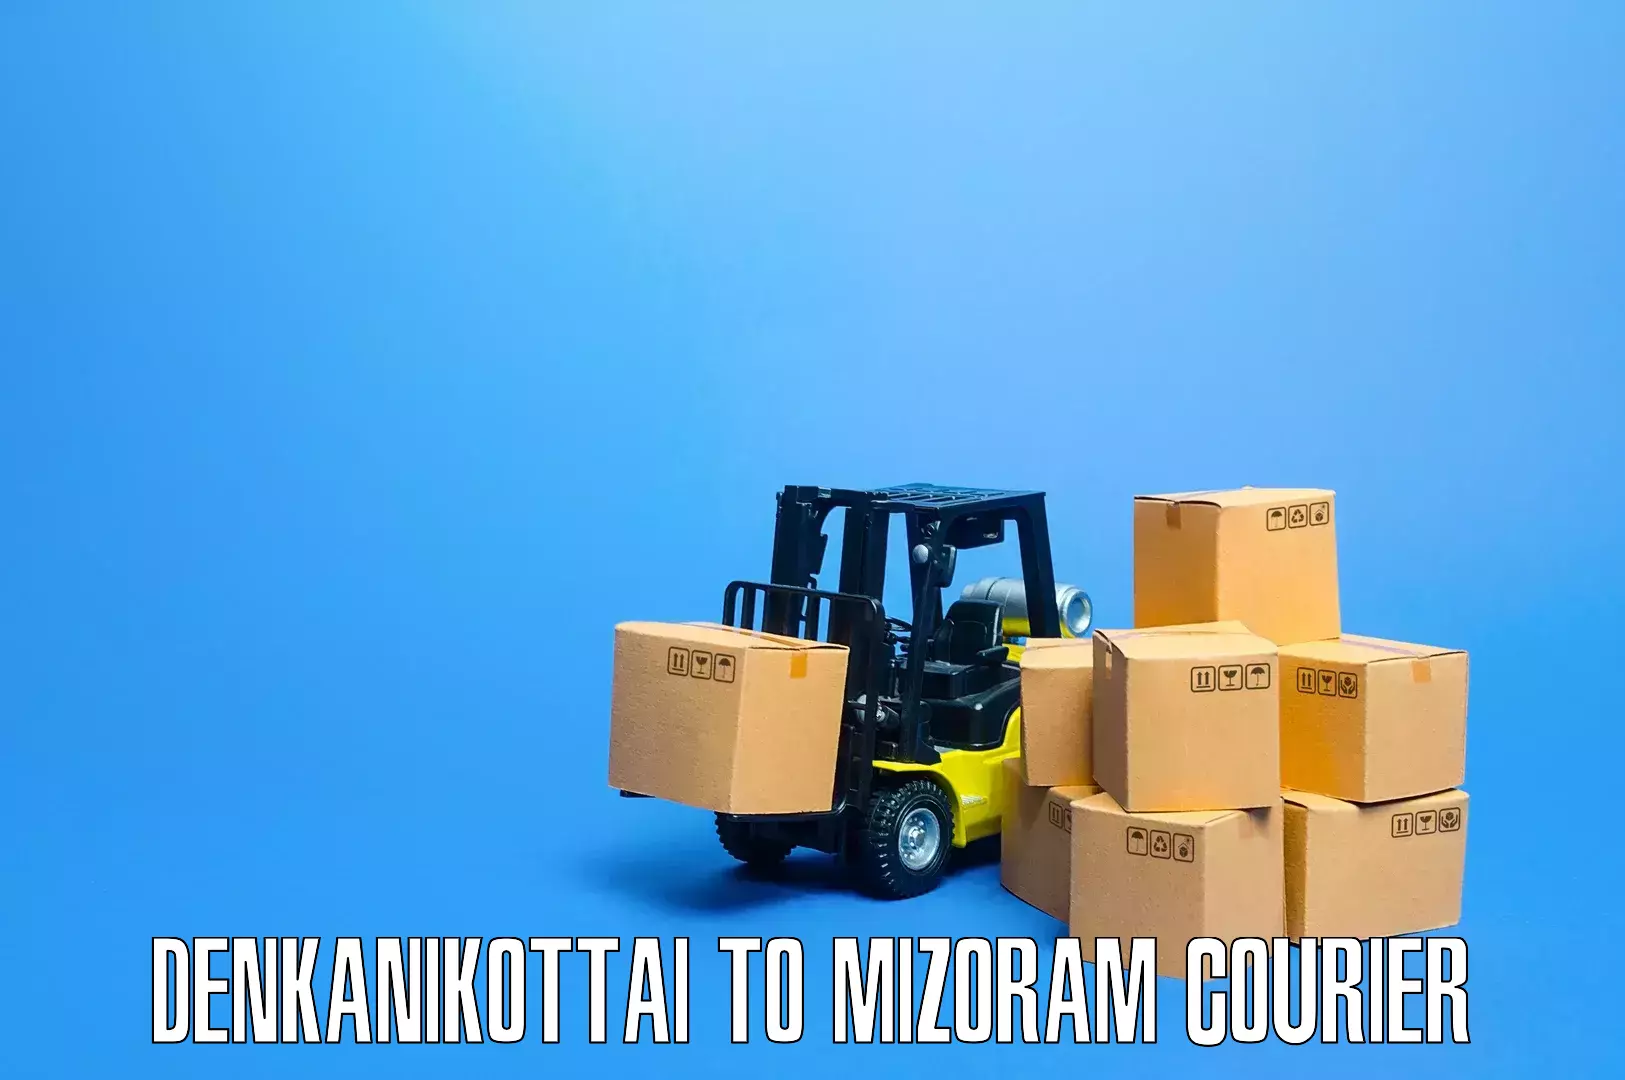 Household transport solutions Denkanikottai to Khawzawl